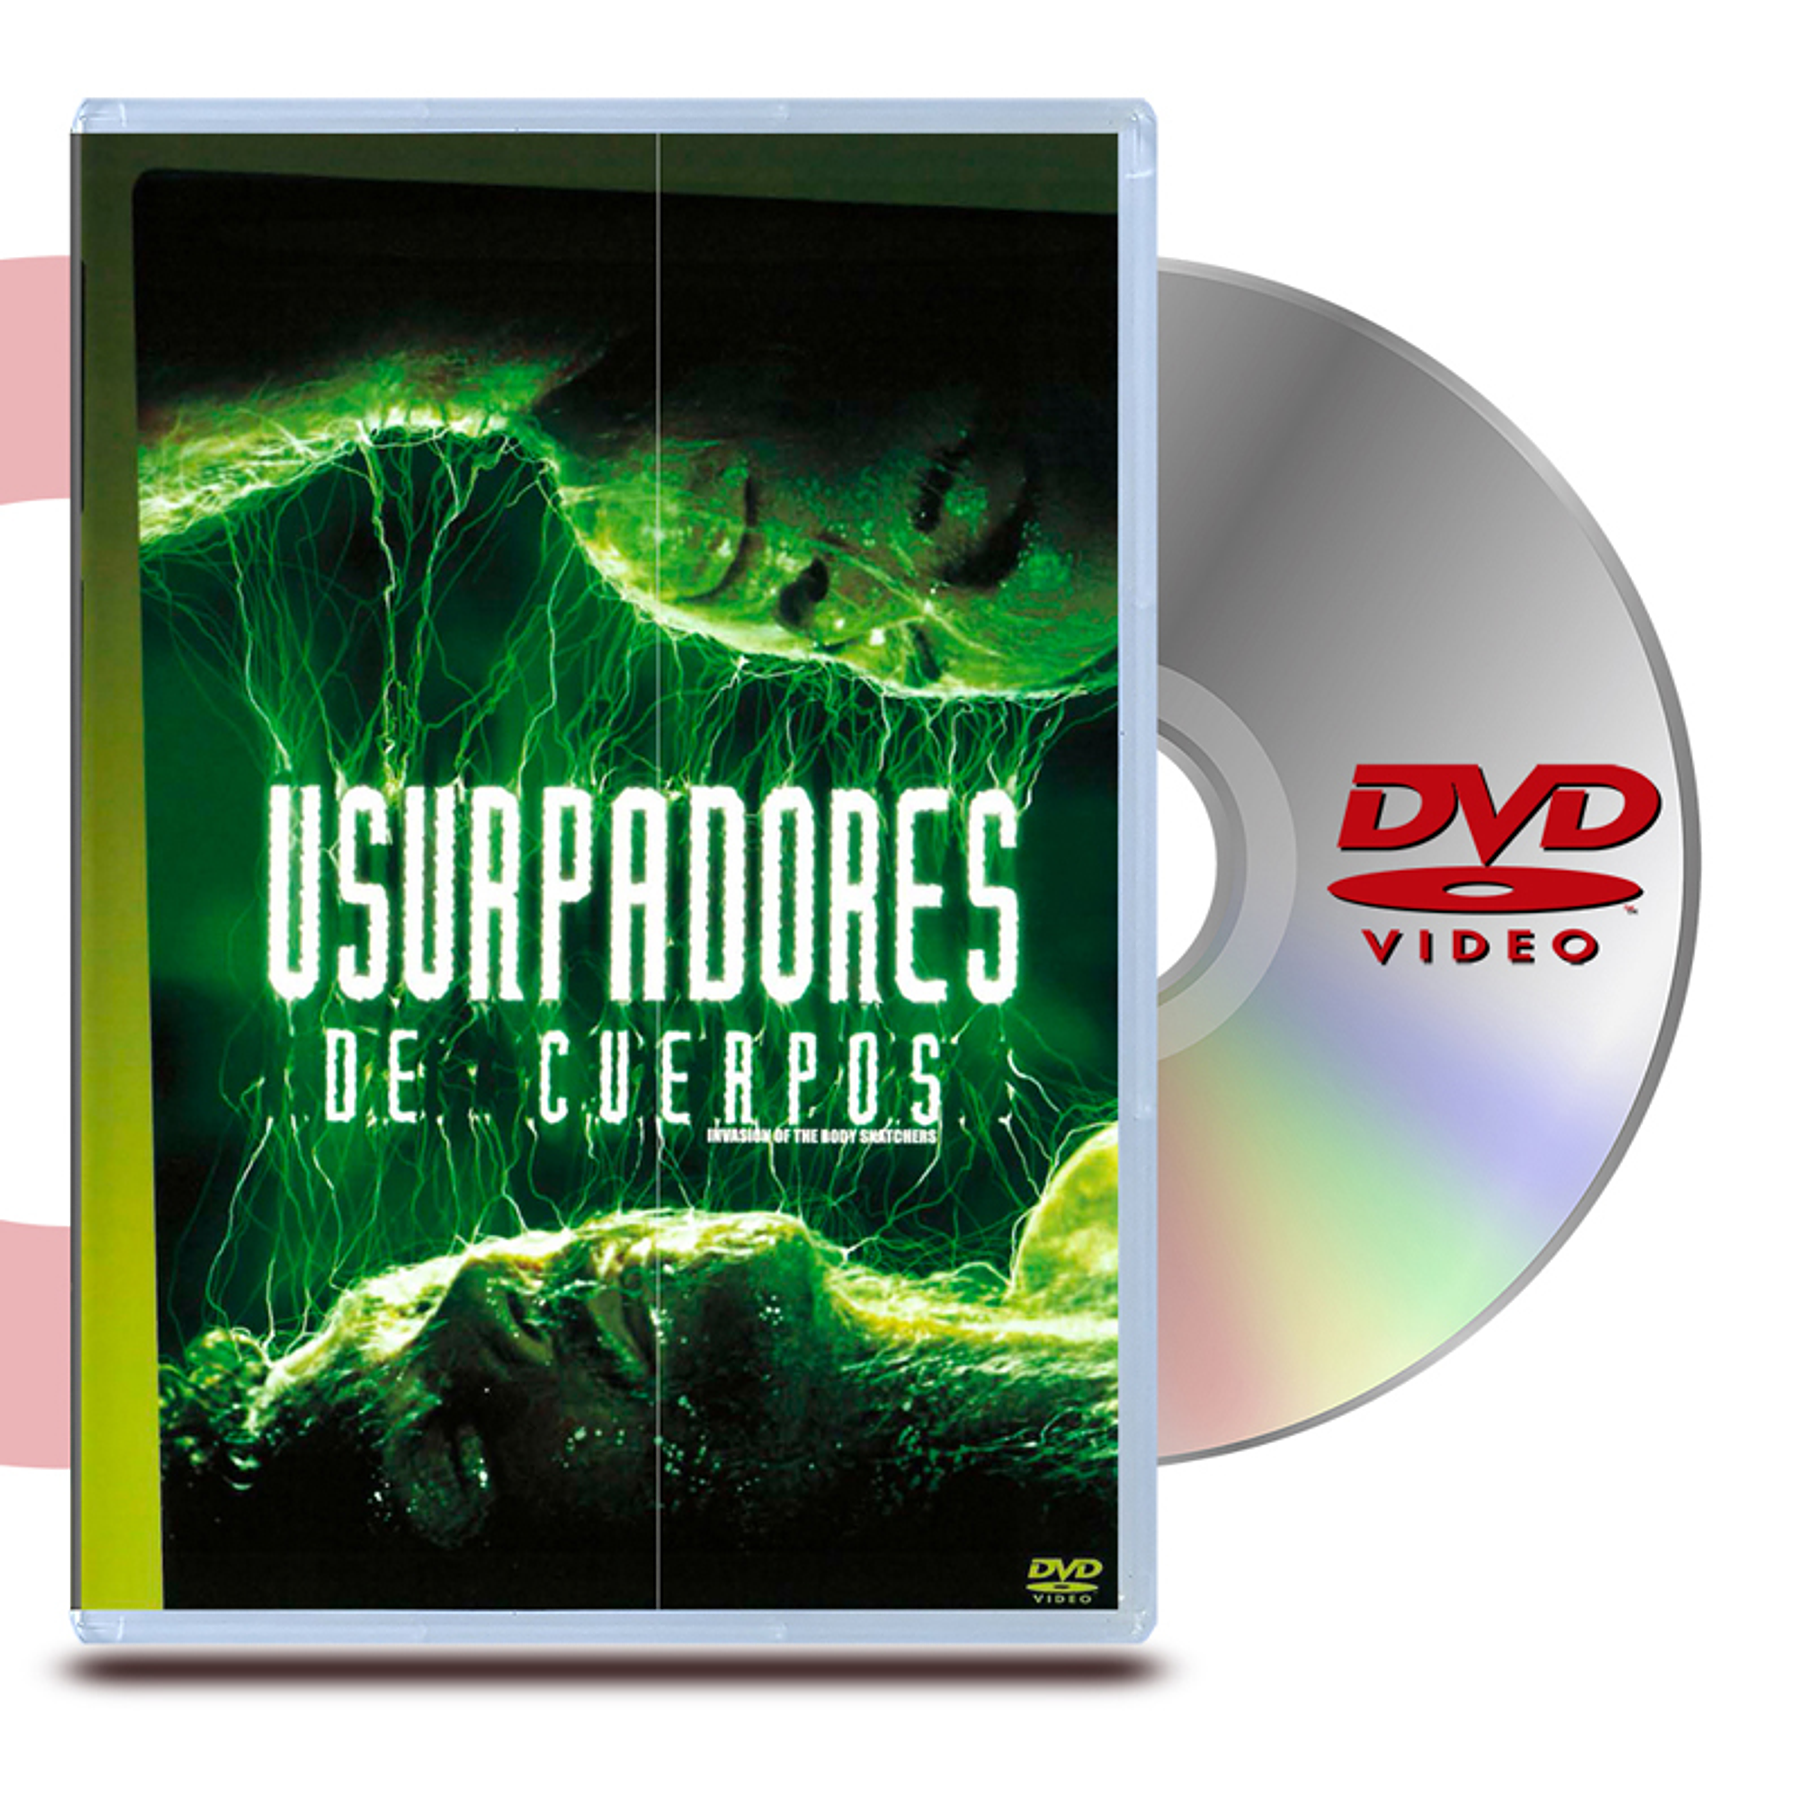 DVD USURPADORES DE CUERPO